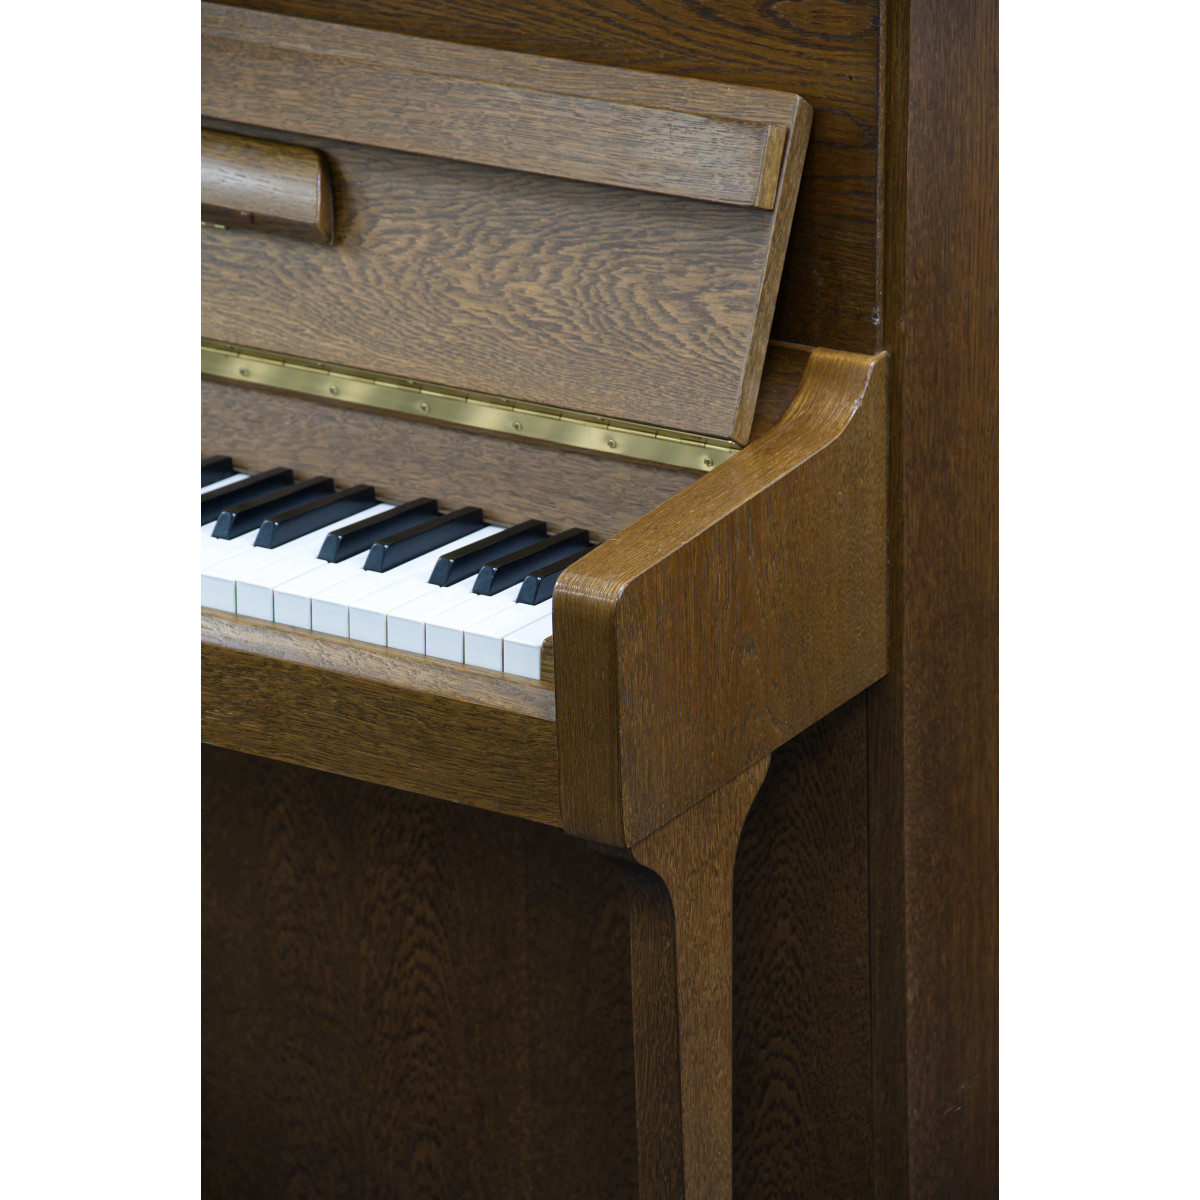 Schimmel Klavier Nussbaum günstig gebraucht kaufen bei Pianelli